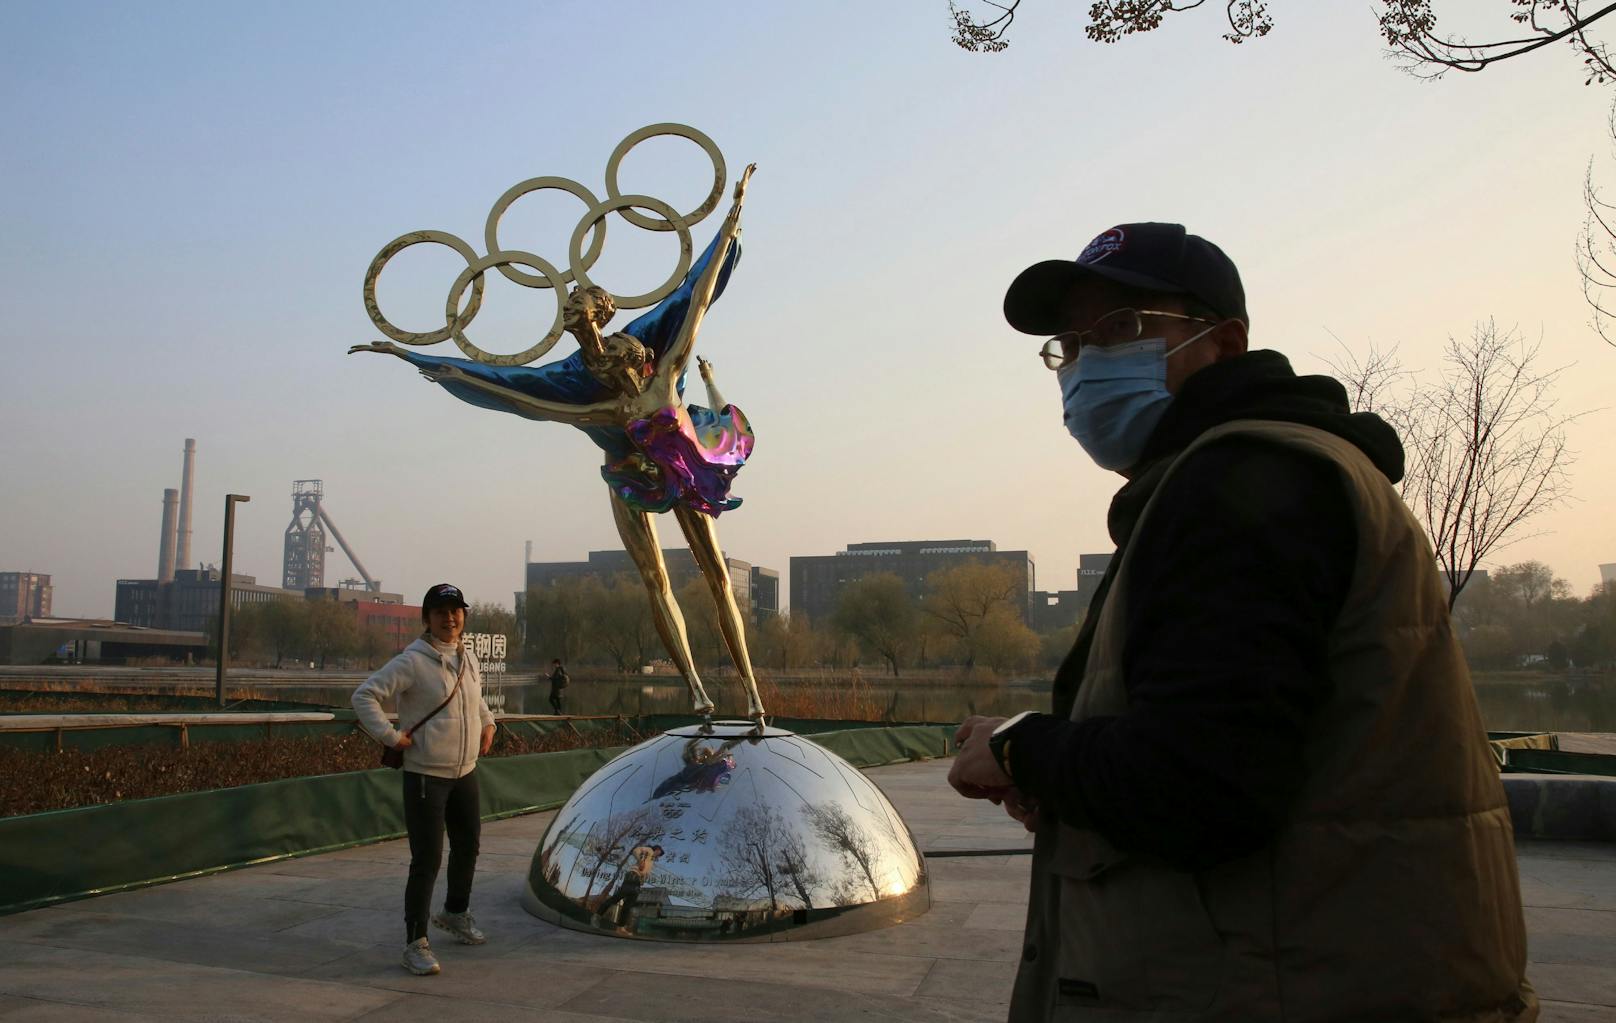 In Peking finden ab 4. Februar die Olympischen Winterspiele statt. Die Nachbarstadt Tianjin verzeichnet indes erste Omikron-Fälle. Wird das zum Problem für Olympia?